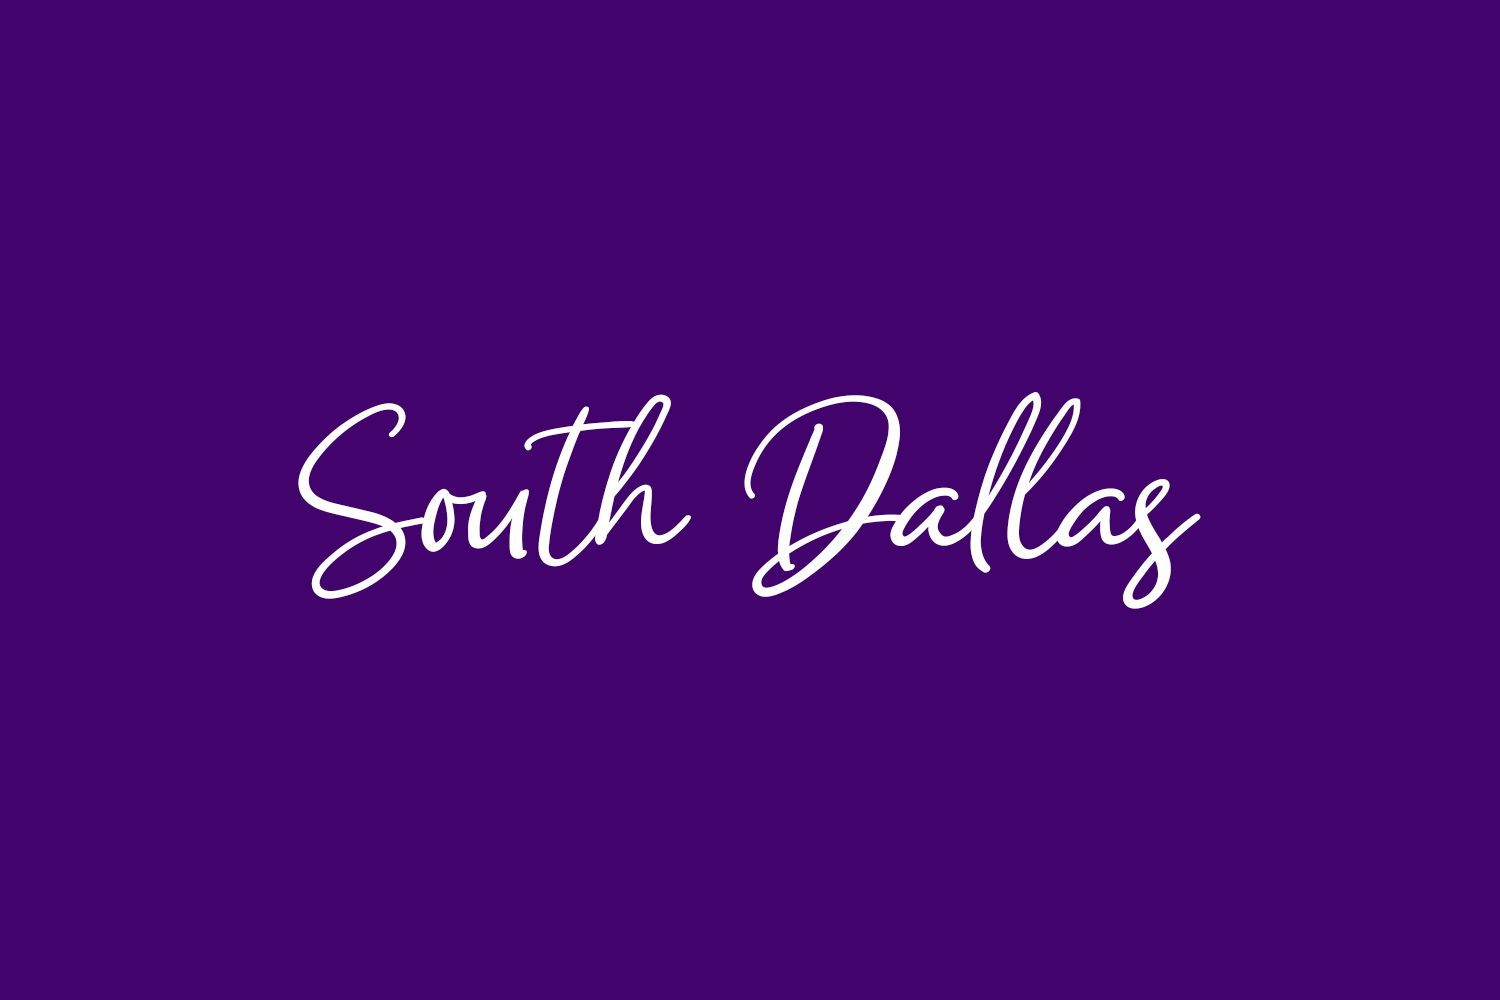 South Dallas Free Font